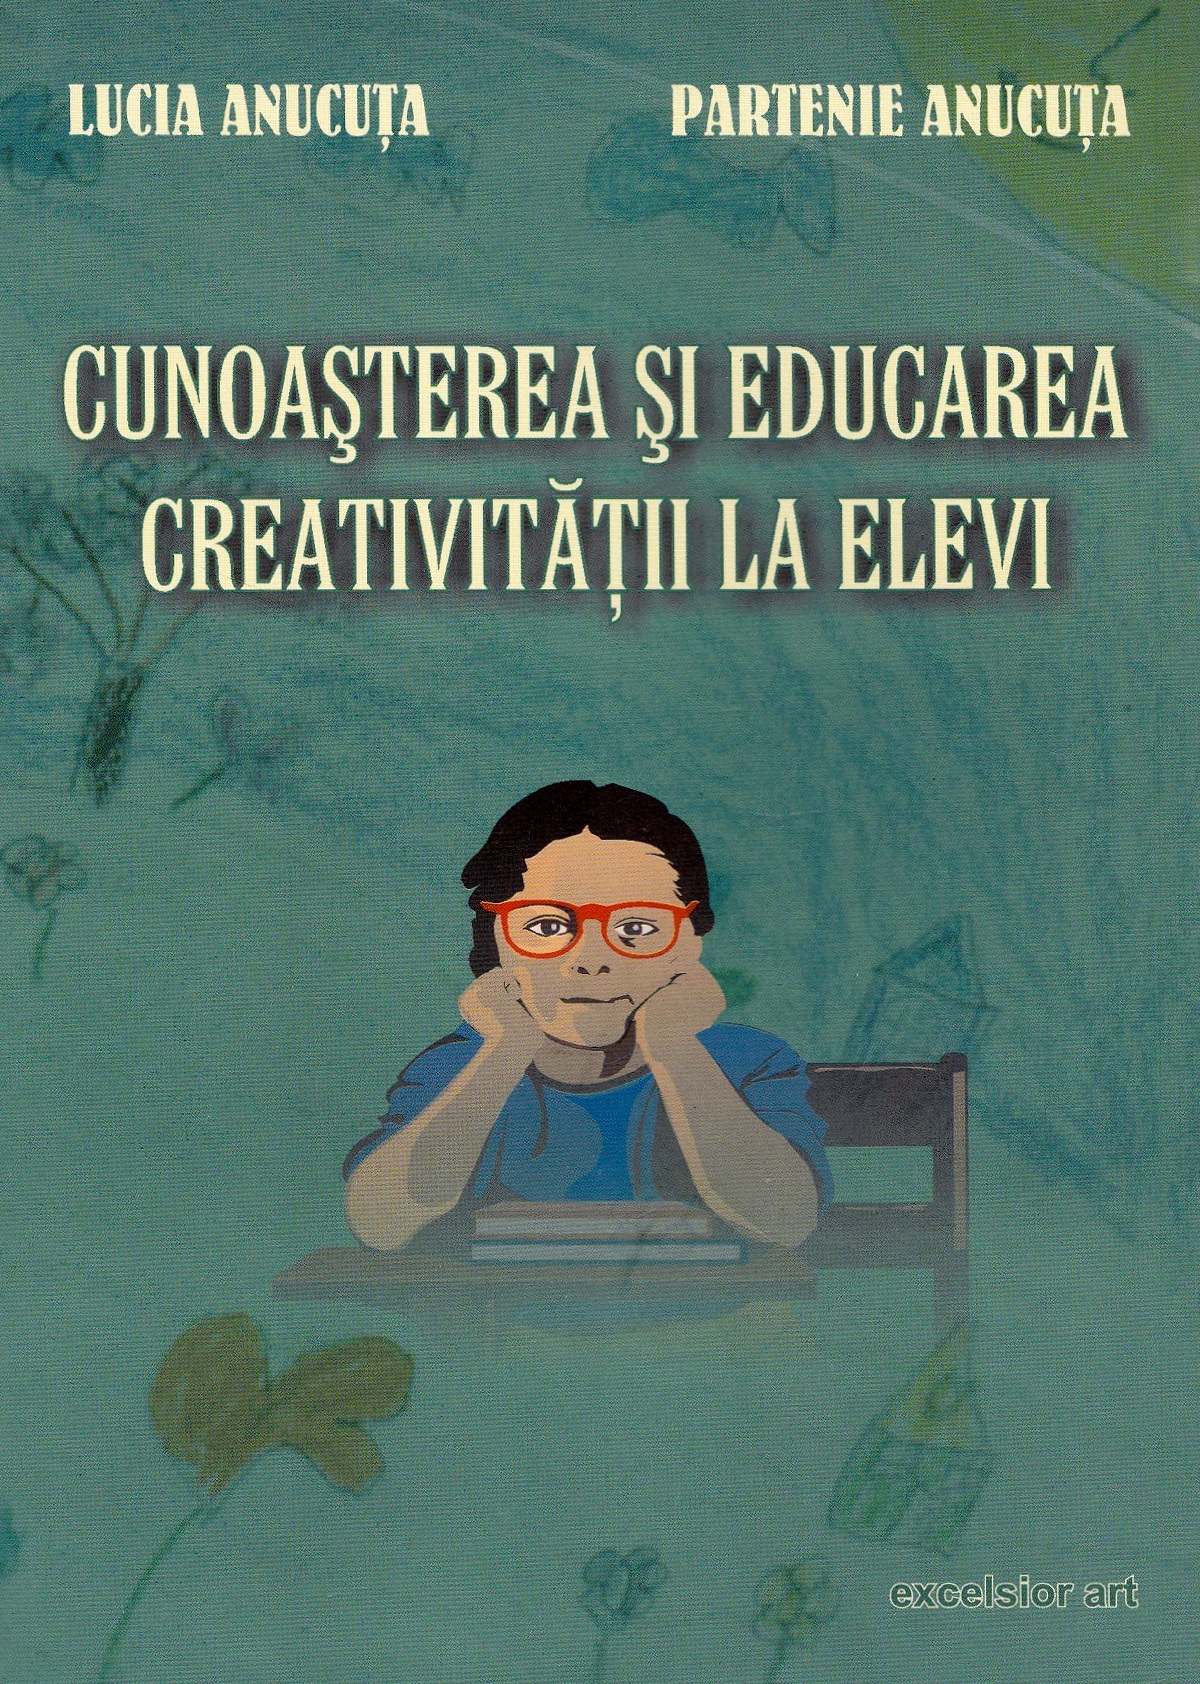 Cunoasterea si educarea creativitatii la elevi - Lucia Anucuta, Partenie Anucuta